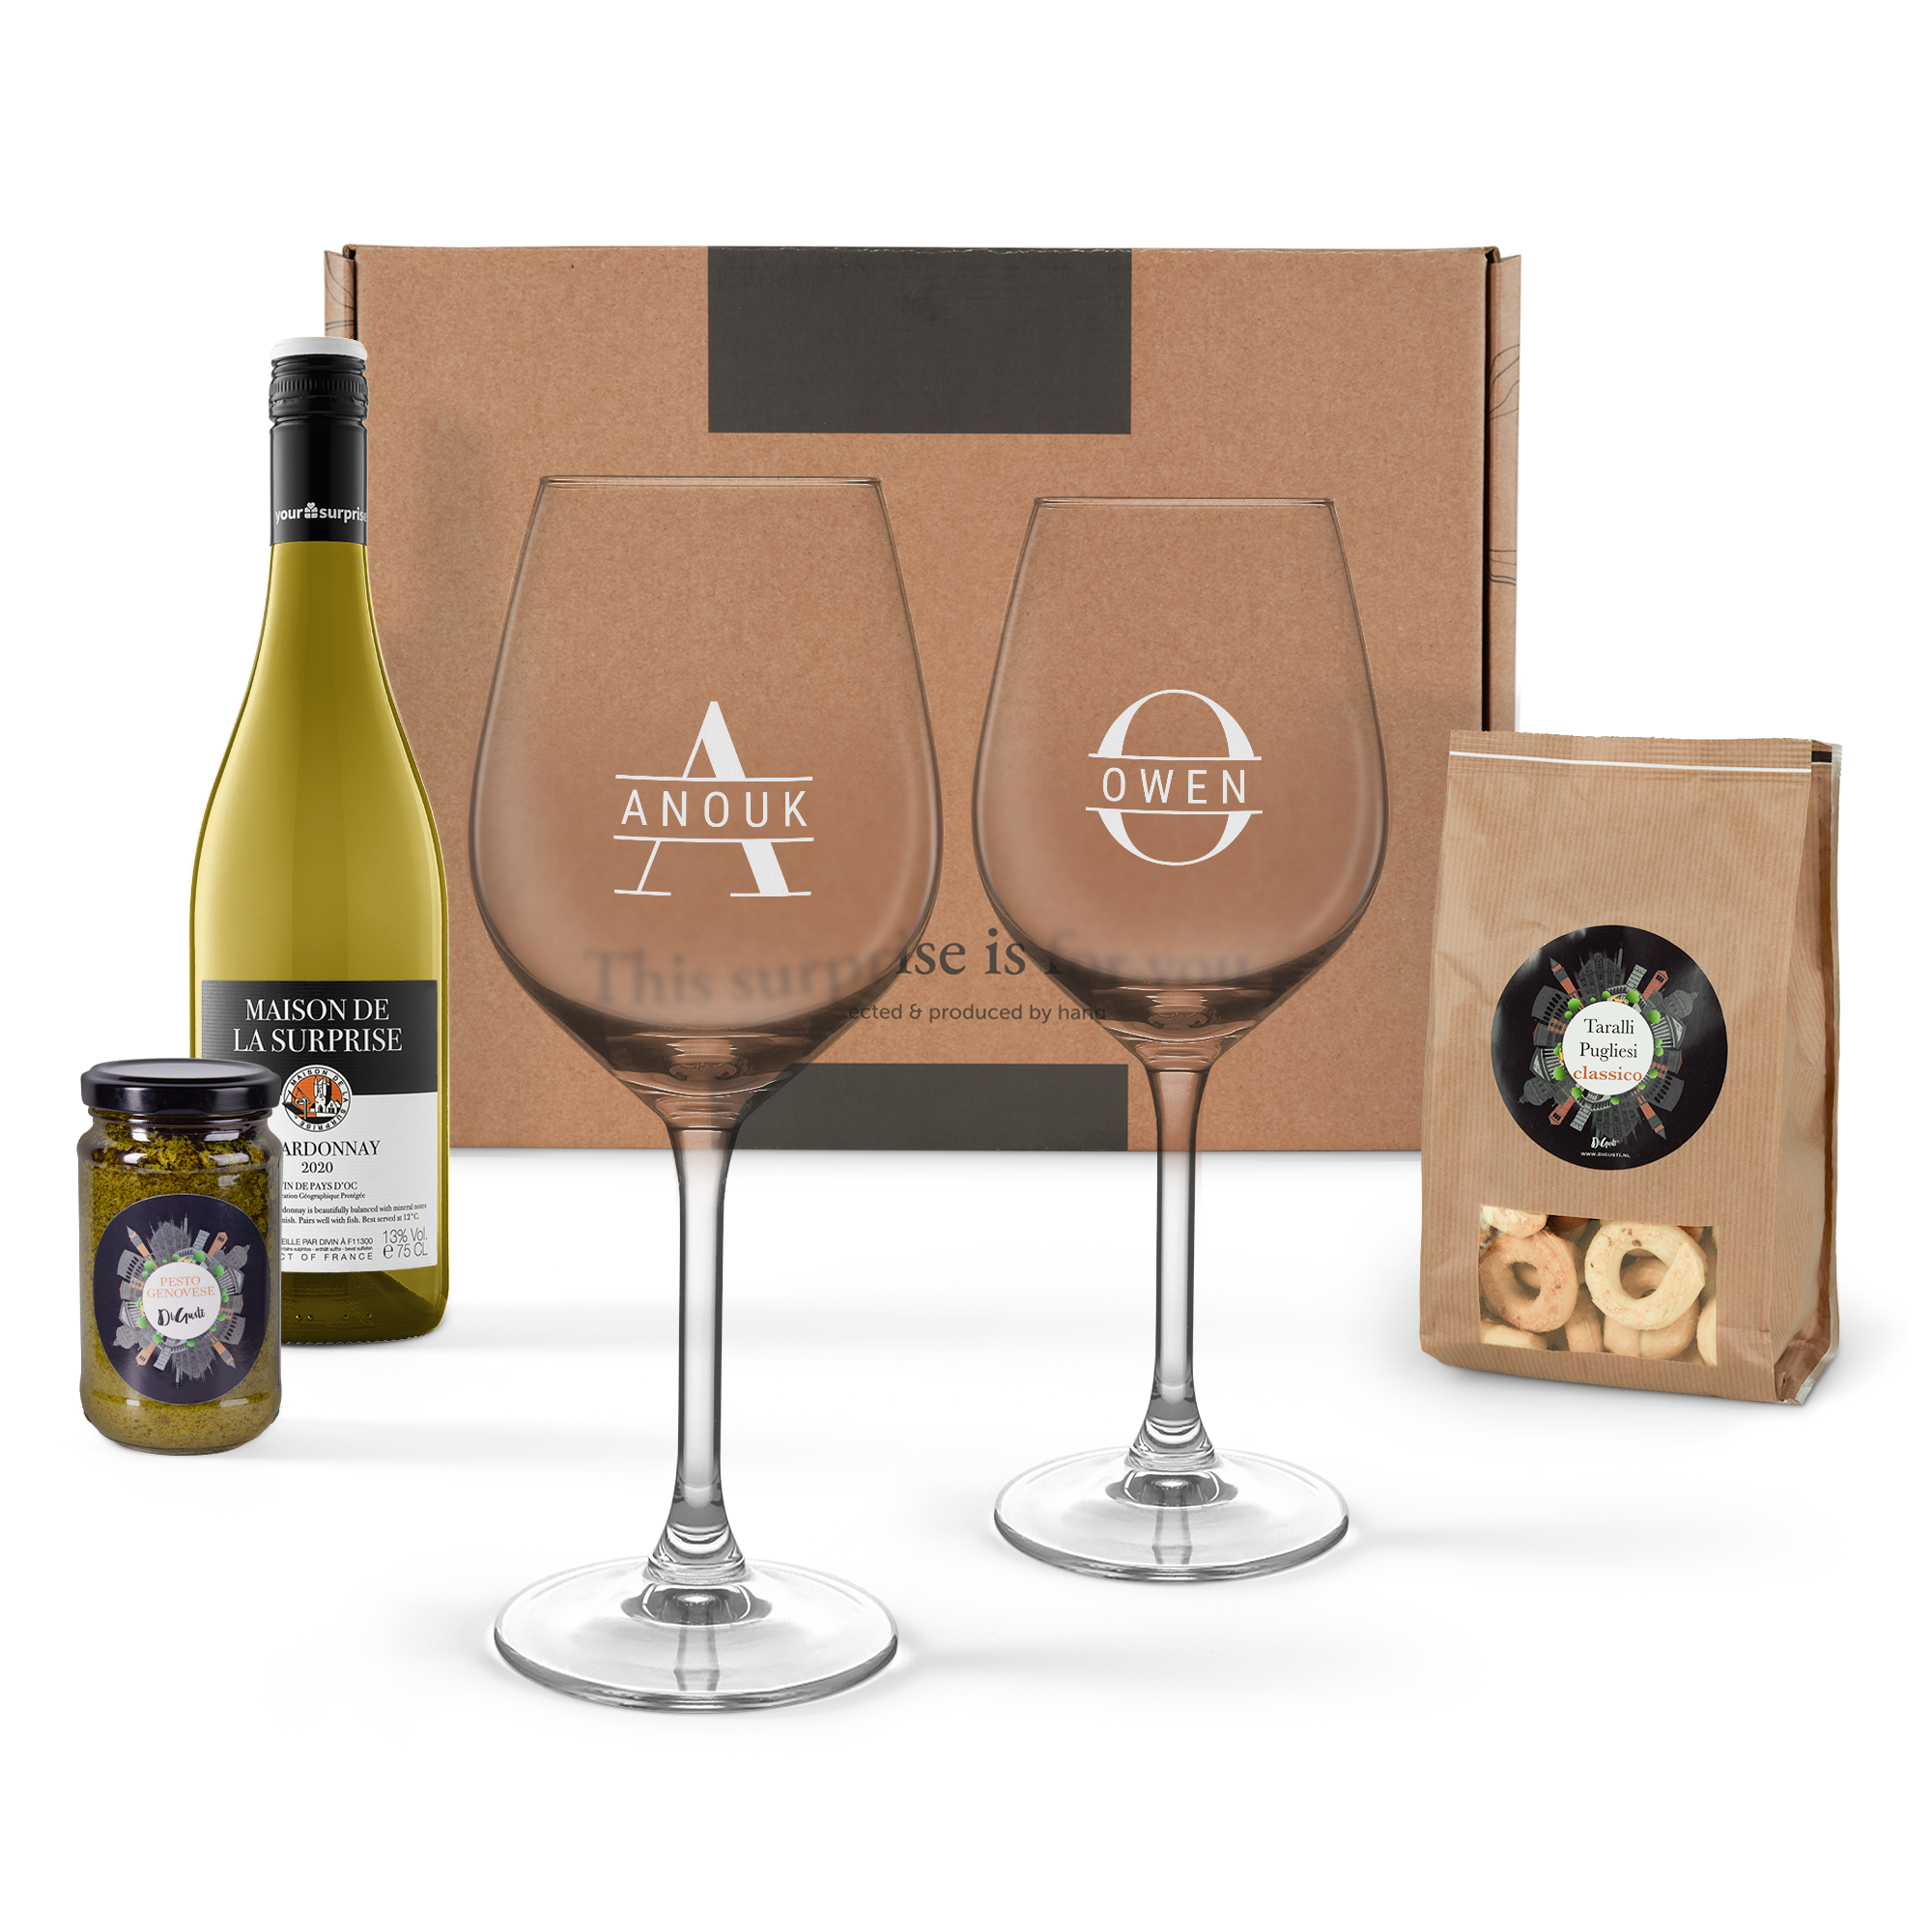 Nápojový balíček s bílým vínem a gravírovanými skleničkami